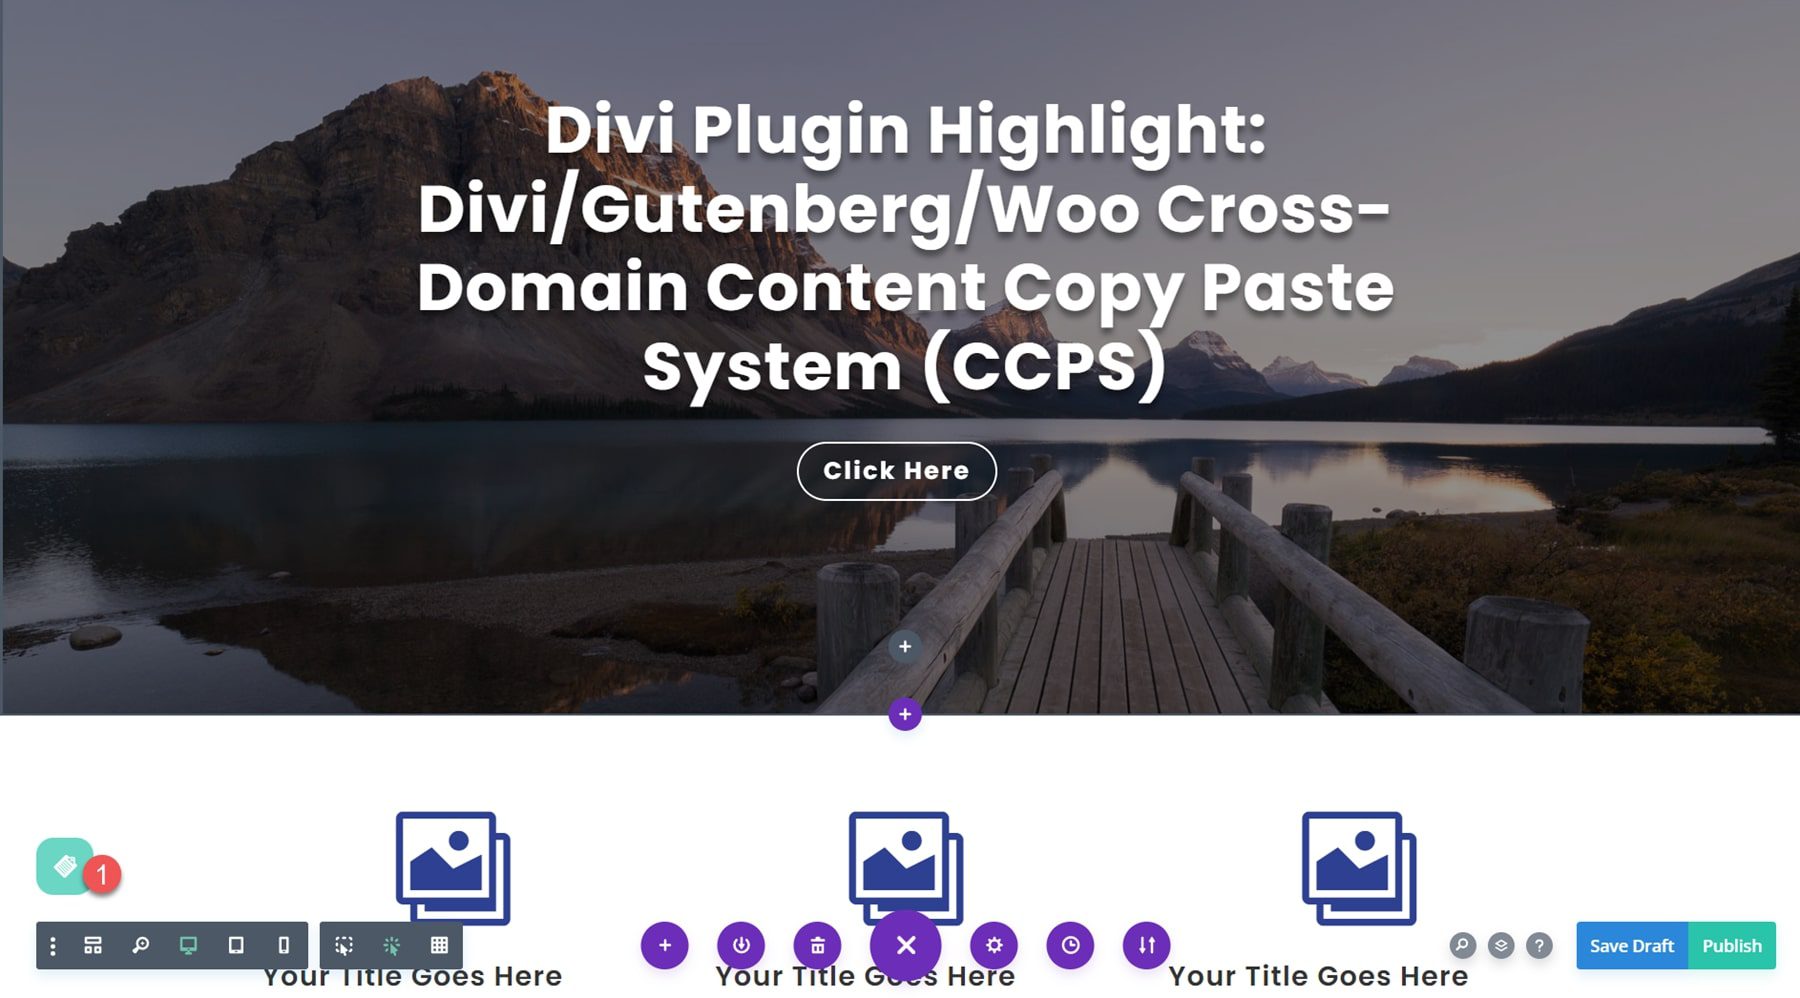 Divi 플러그인 하이라이트 Divi/Gutenberg/Woo CCPS(Cross-Domain Content Copy Paste System) Visual Builder 1